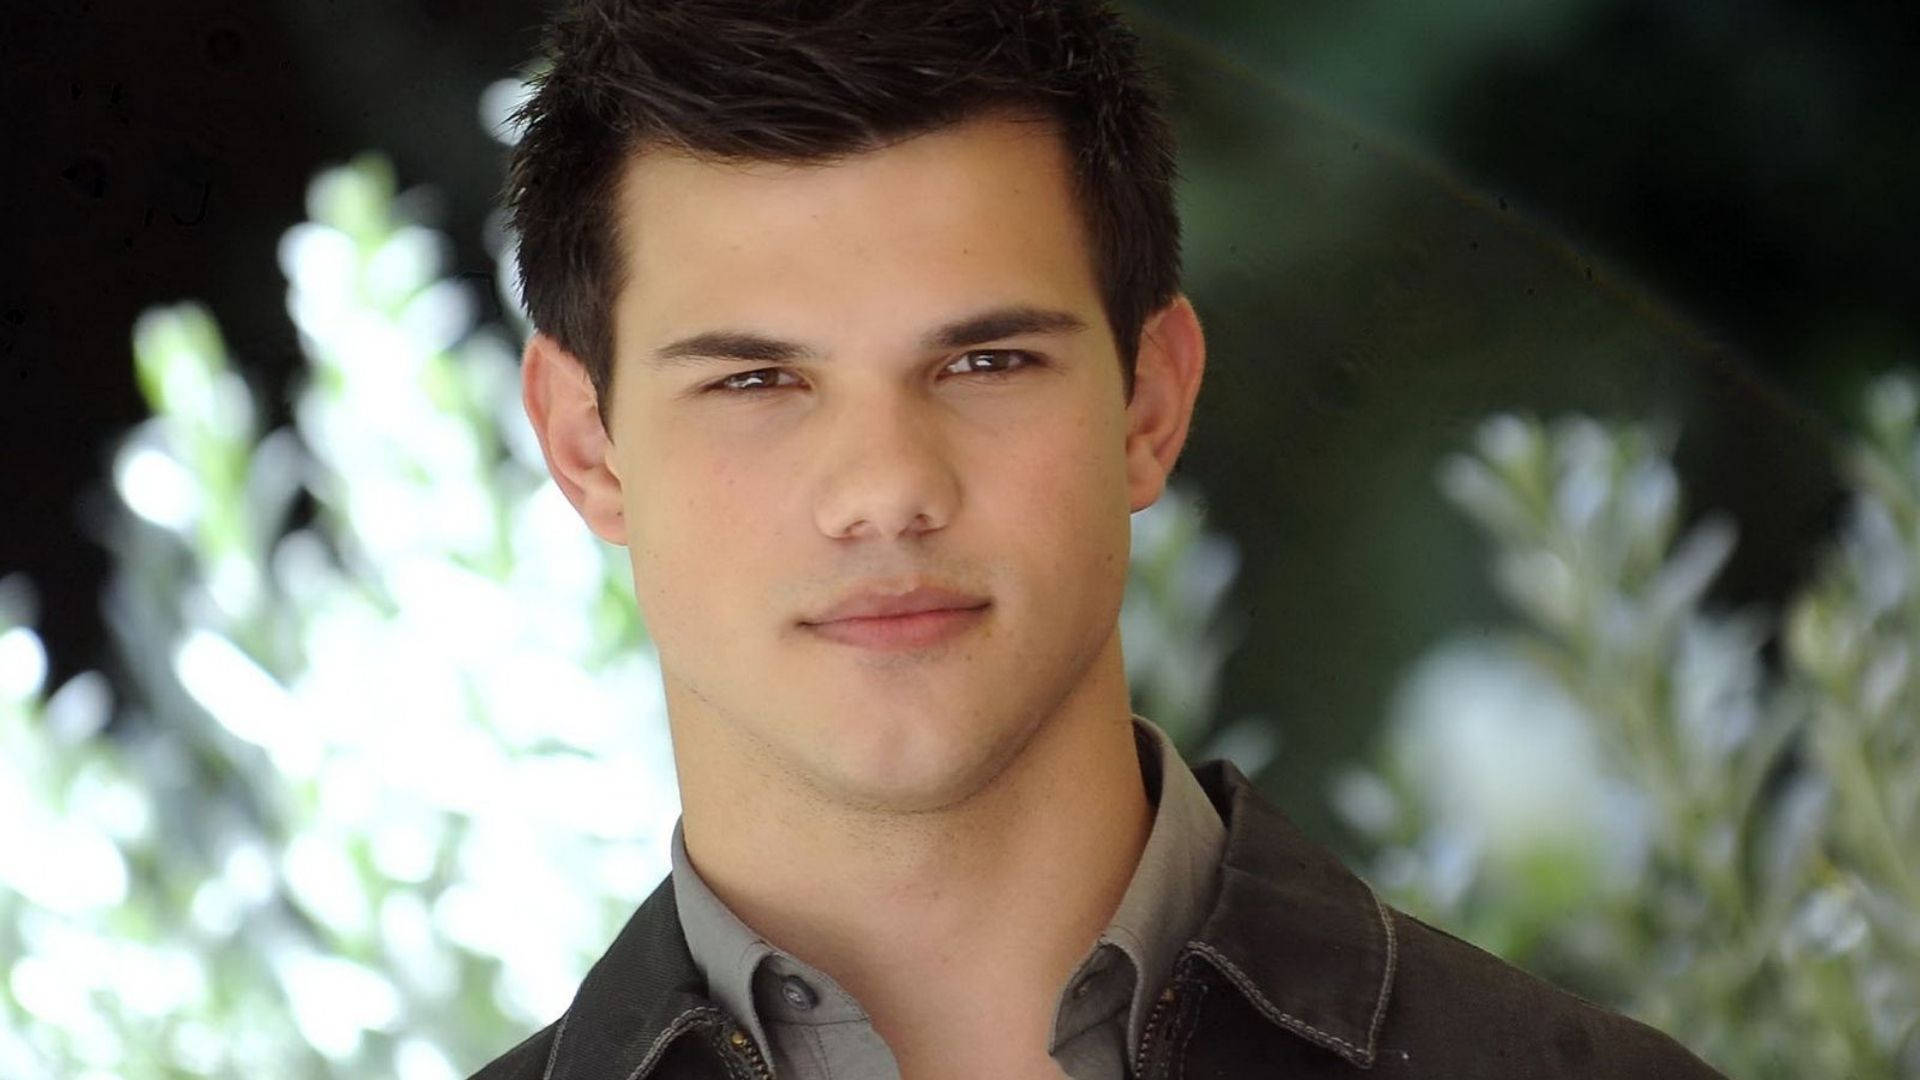 Hunkskådespelaren Taylor Lautner. Wallpaper